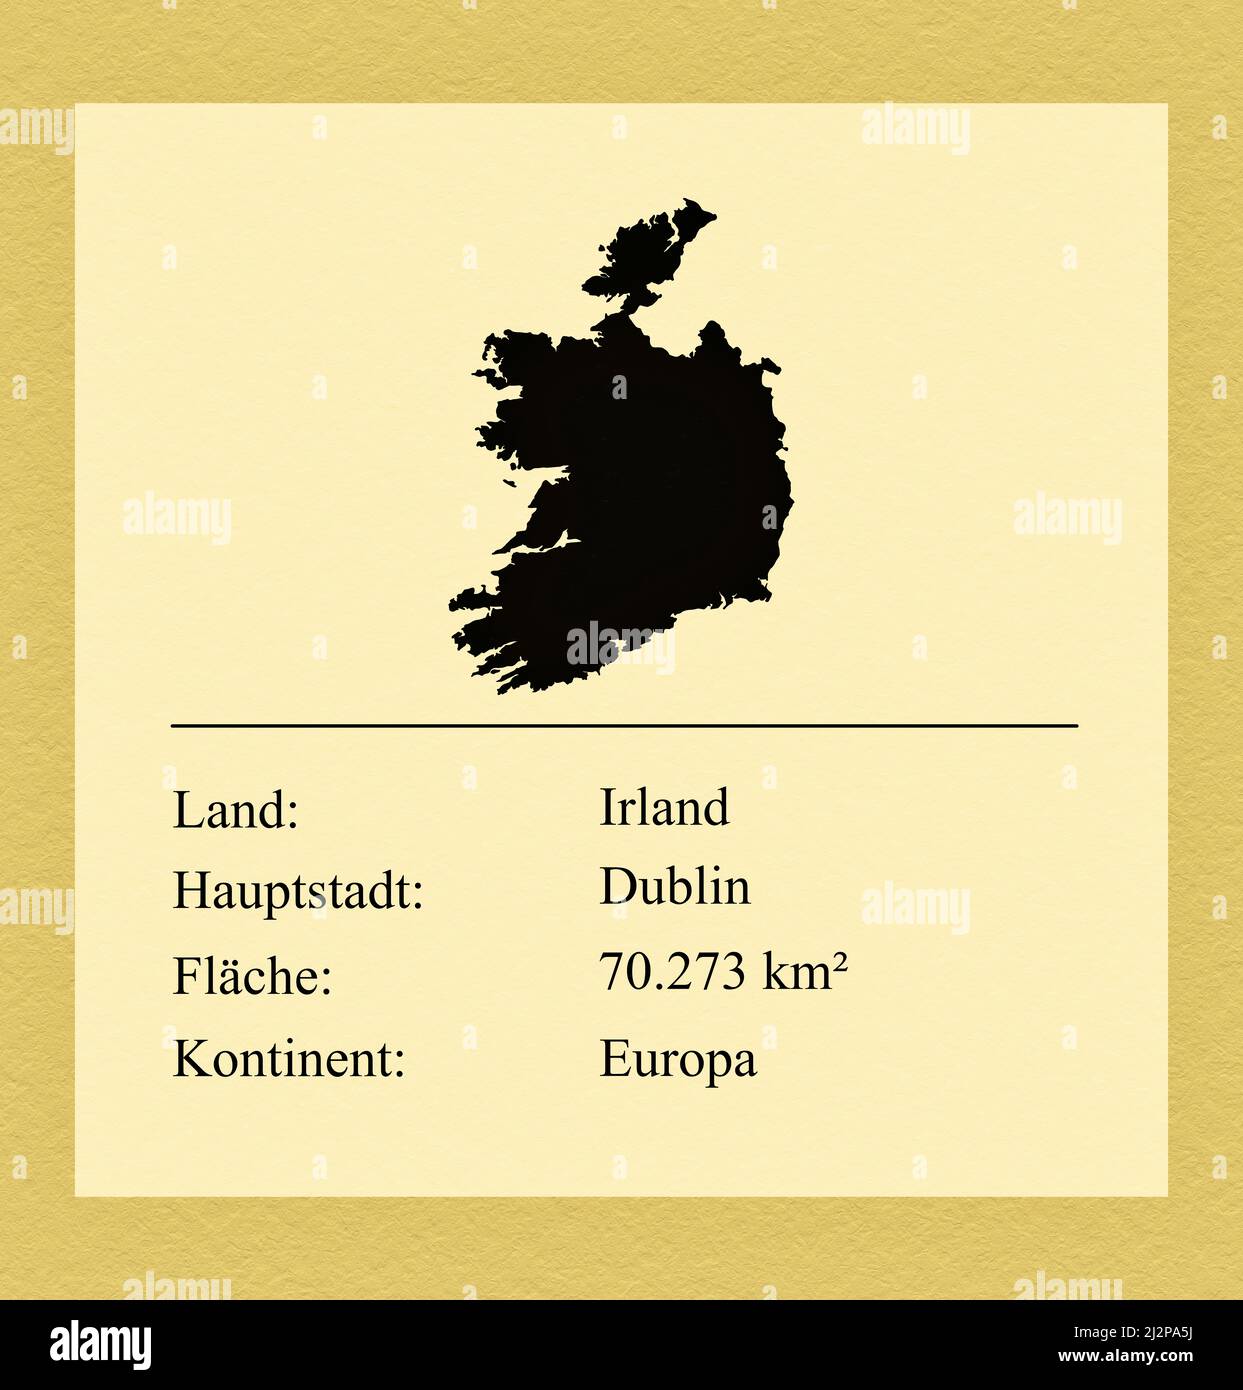 Umrisse des Landes Irland, darunter ein kleiner Steckbrief mit Ländernamen, Hauptstadt, Fläche und Kontinent Foto Stock